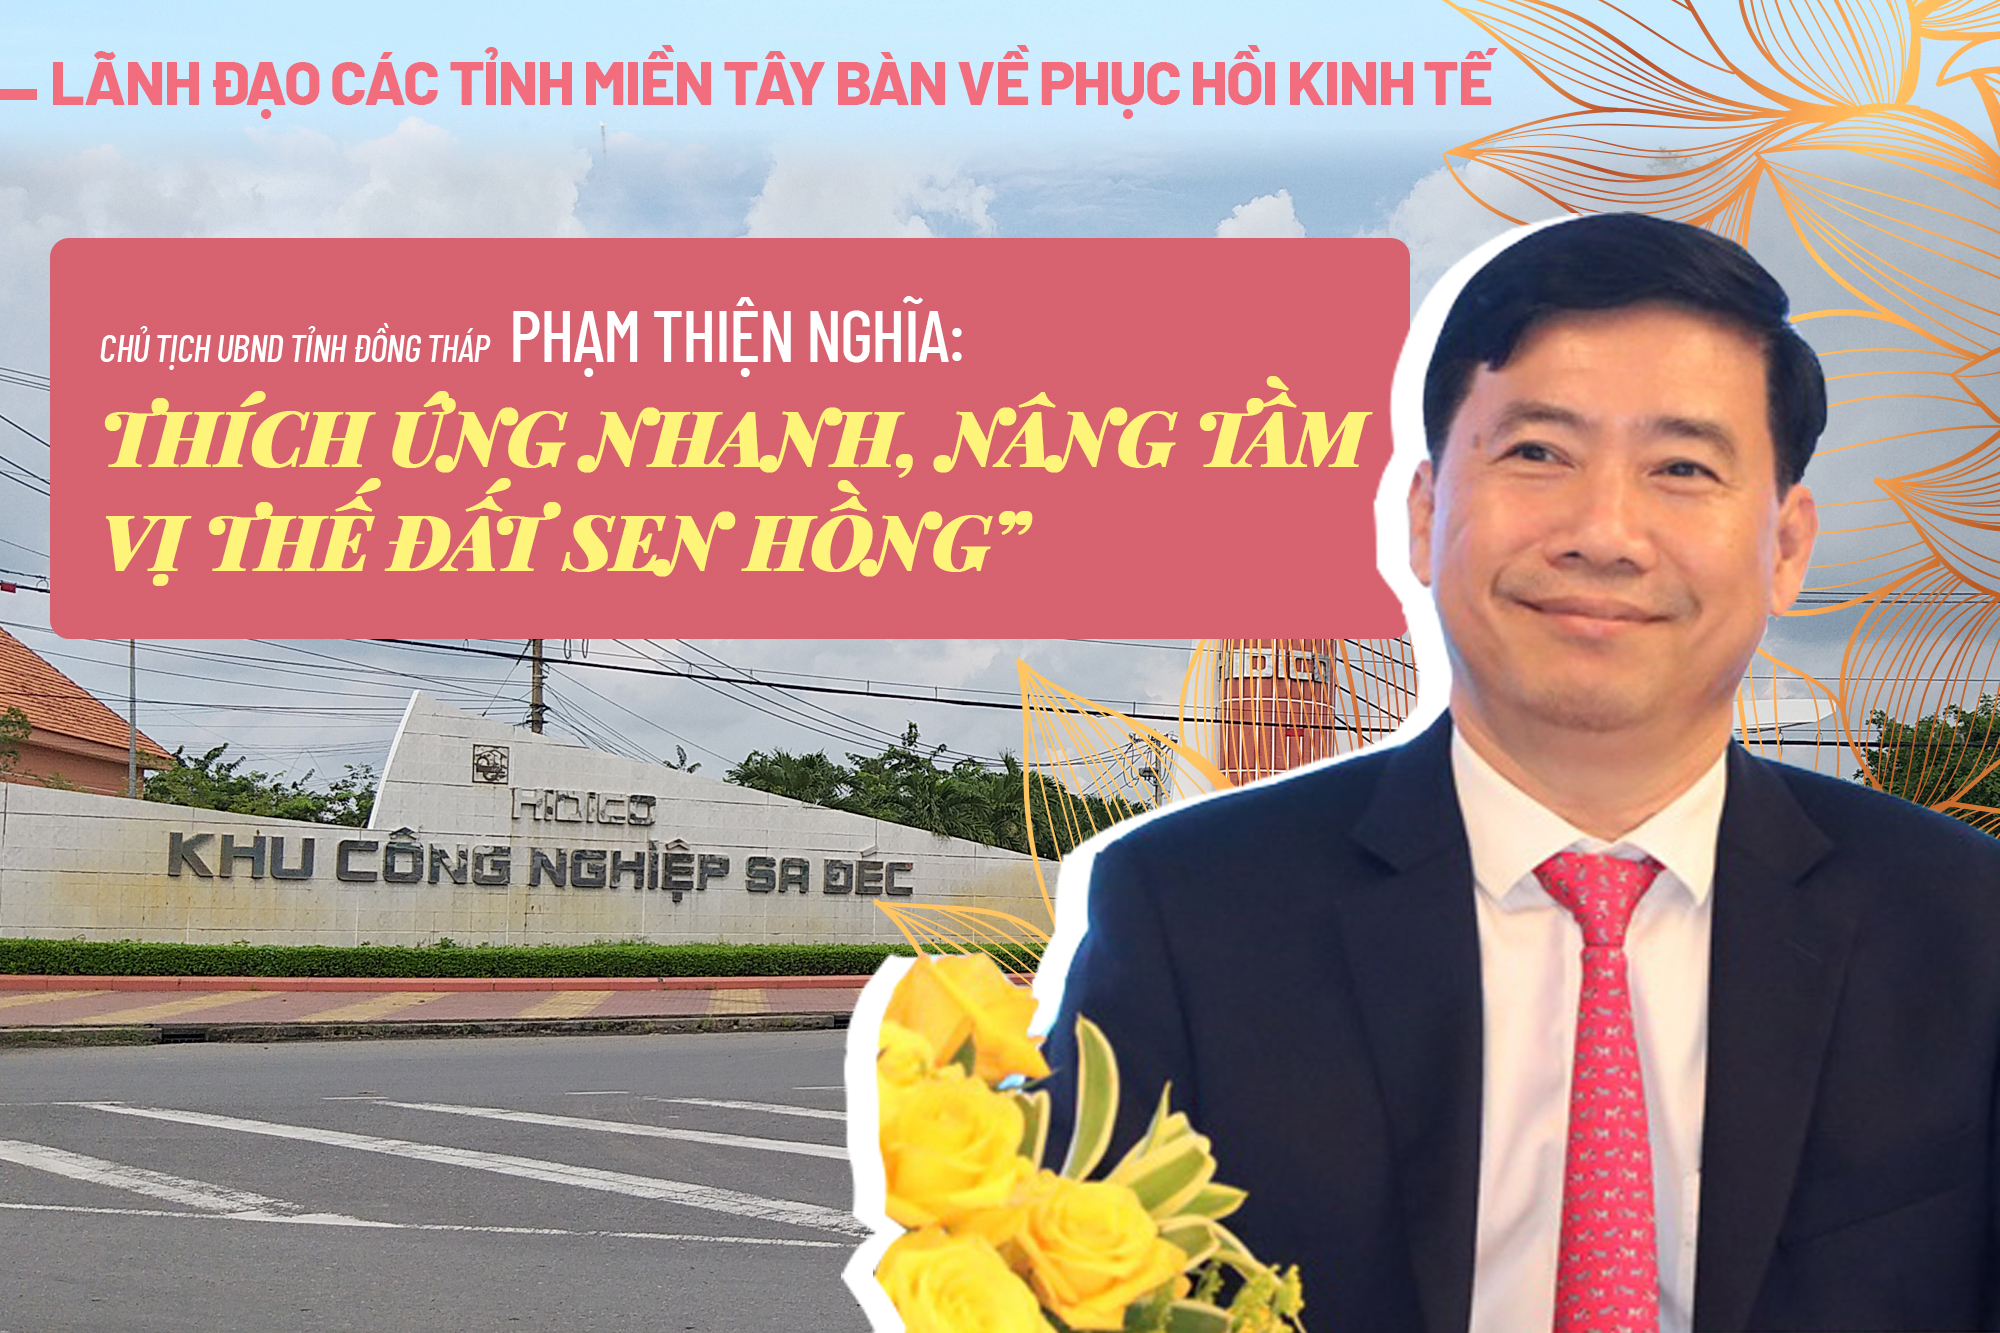 Chủ tịch UBND tỉnh Đồng Tháp: Thích ứng nhanh, nâng tầm vị thế đất Sen hồng